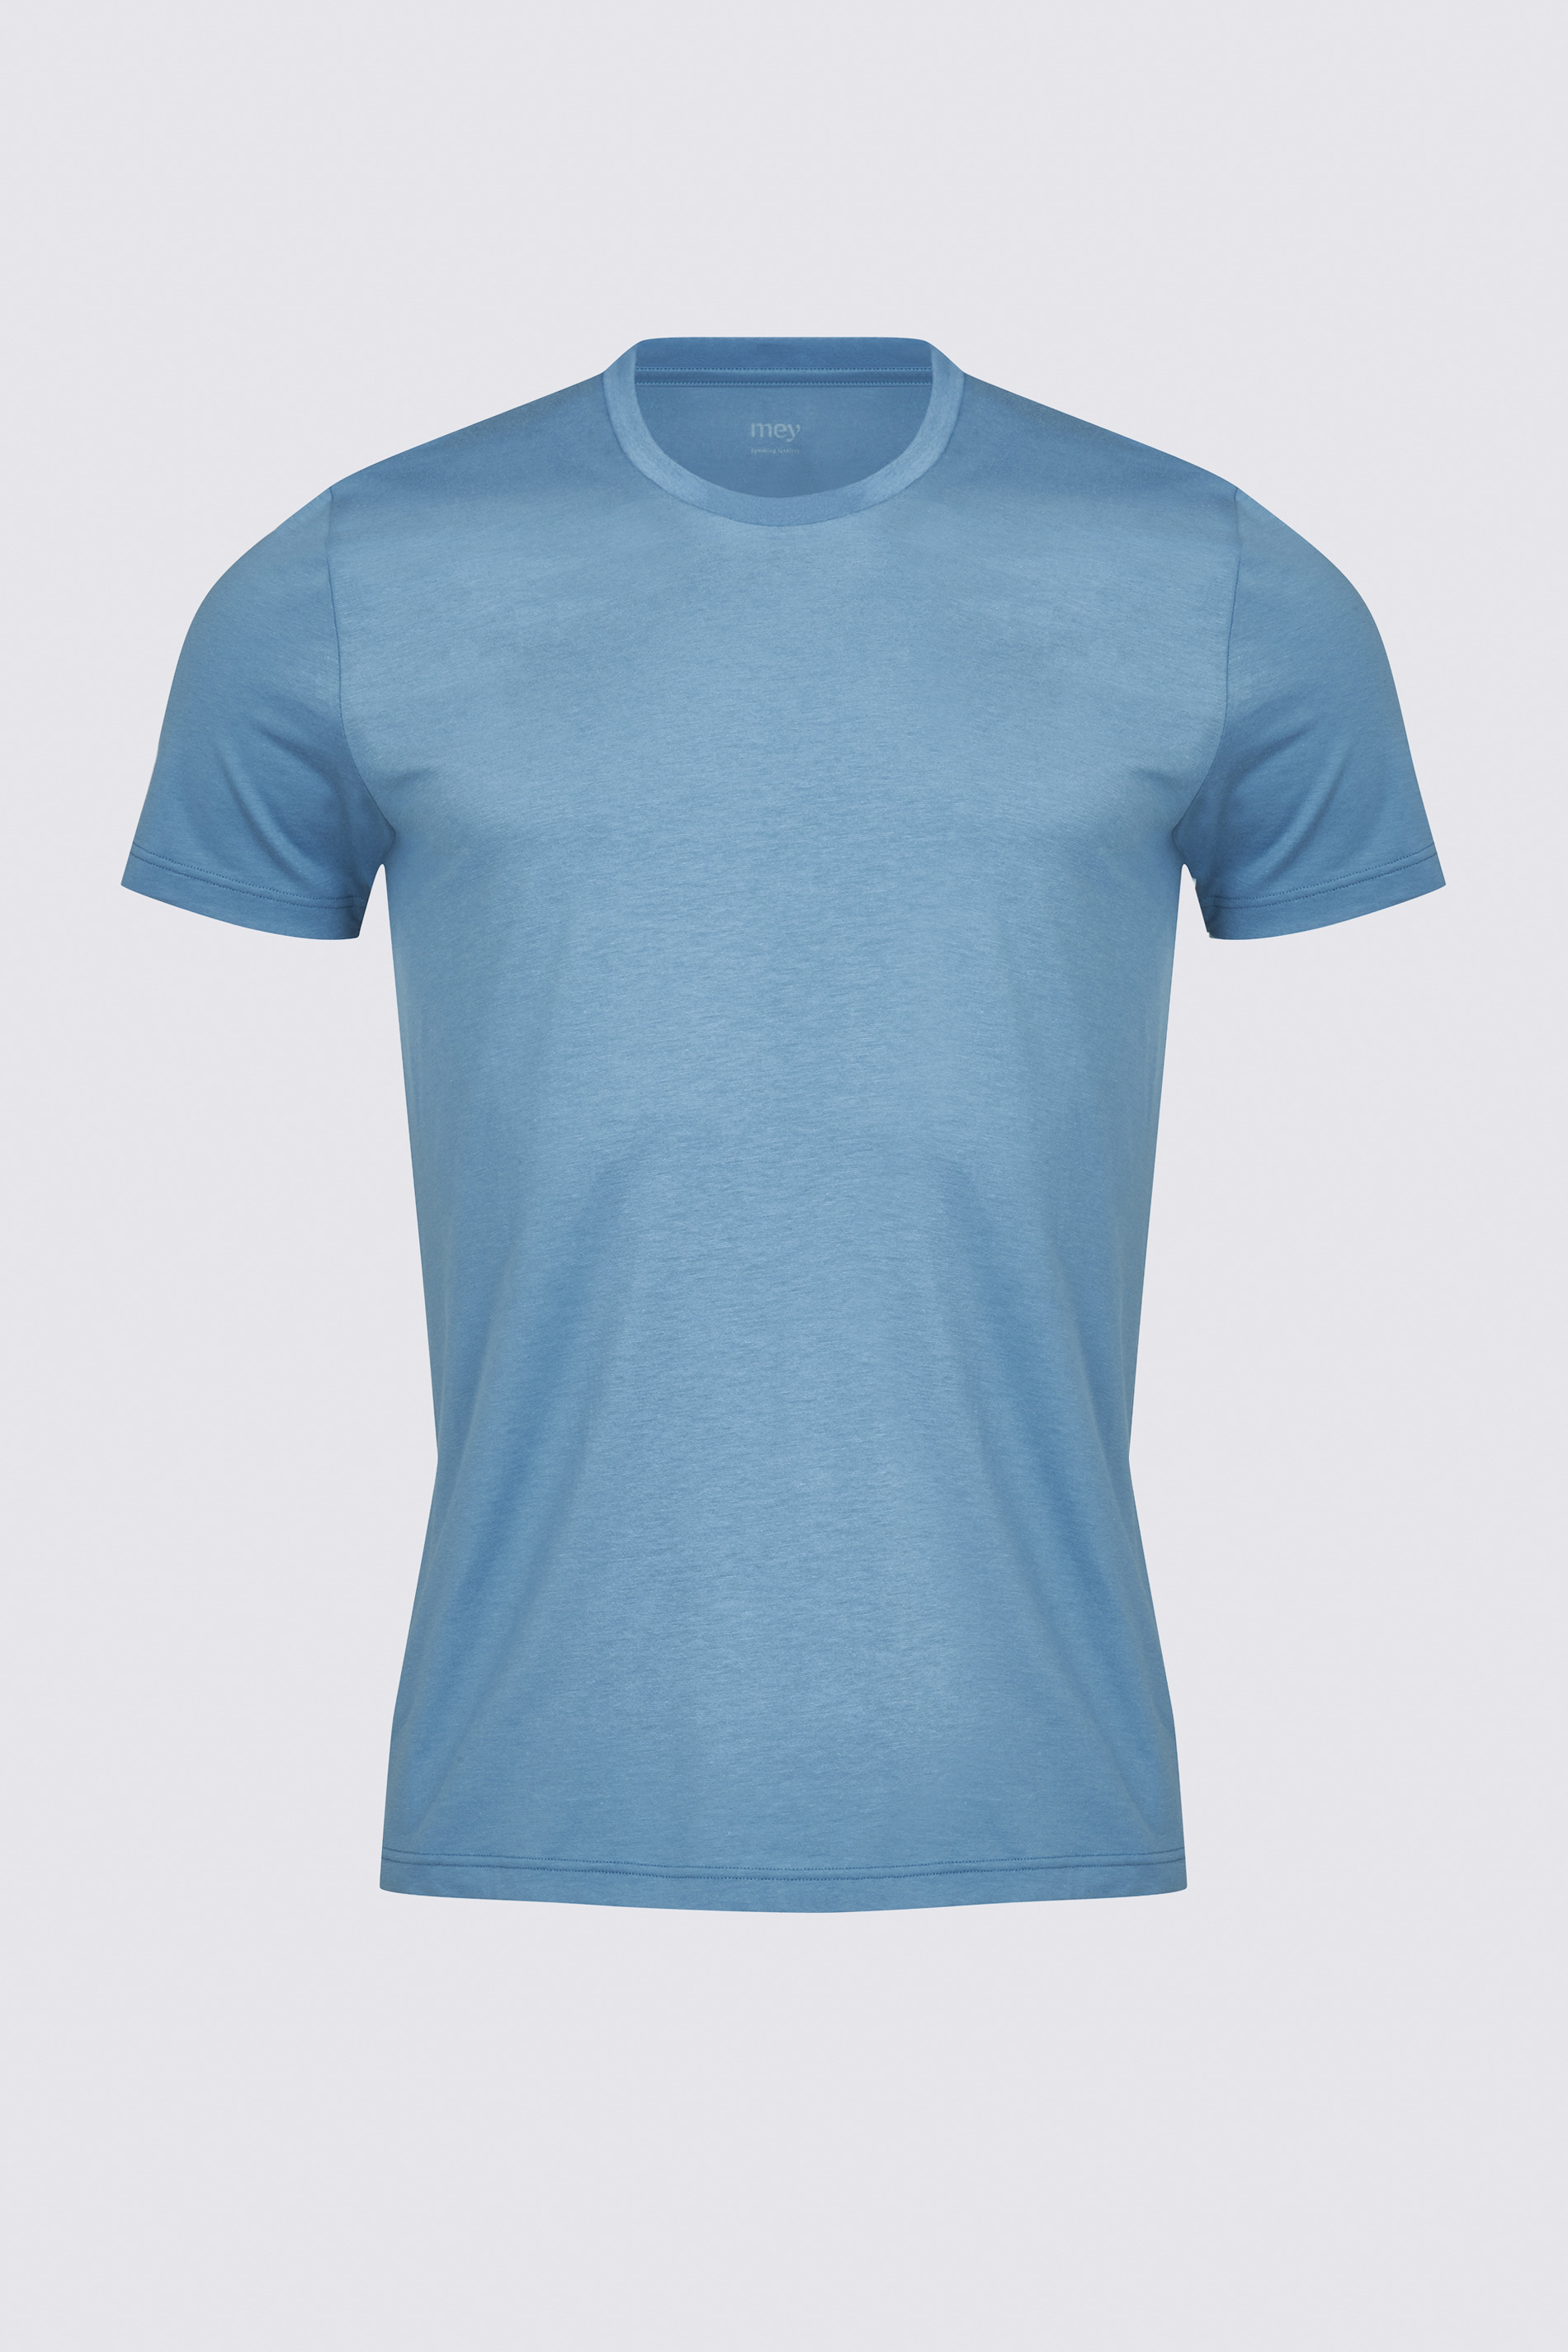 T-Shirt Yale Blue Dry Cotton Colour Freisteller | mey®